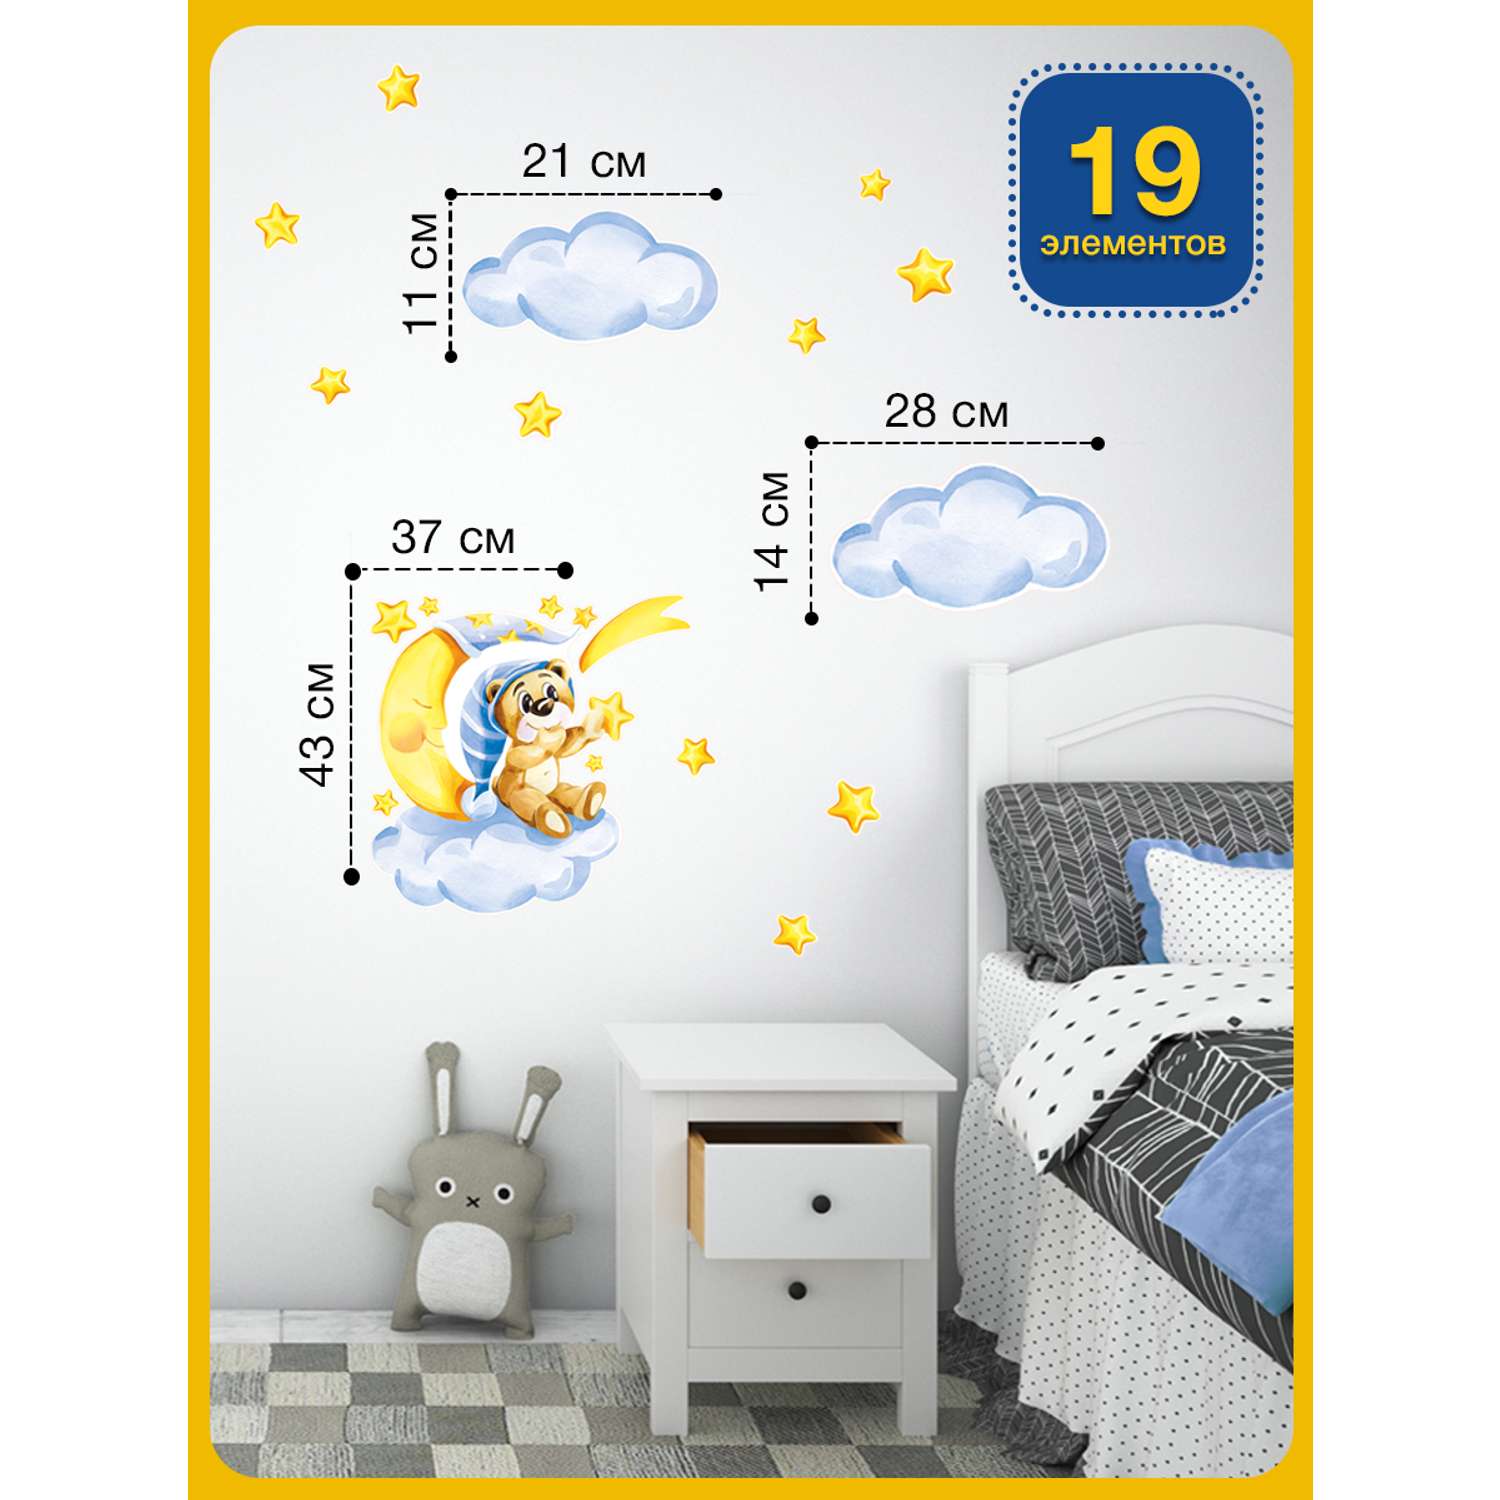 Наклейка оформительская ГК Горчаков в детскую комнату сыну с рисунком мишка для декора - фото 2